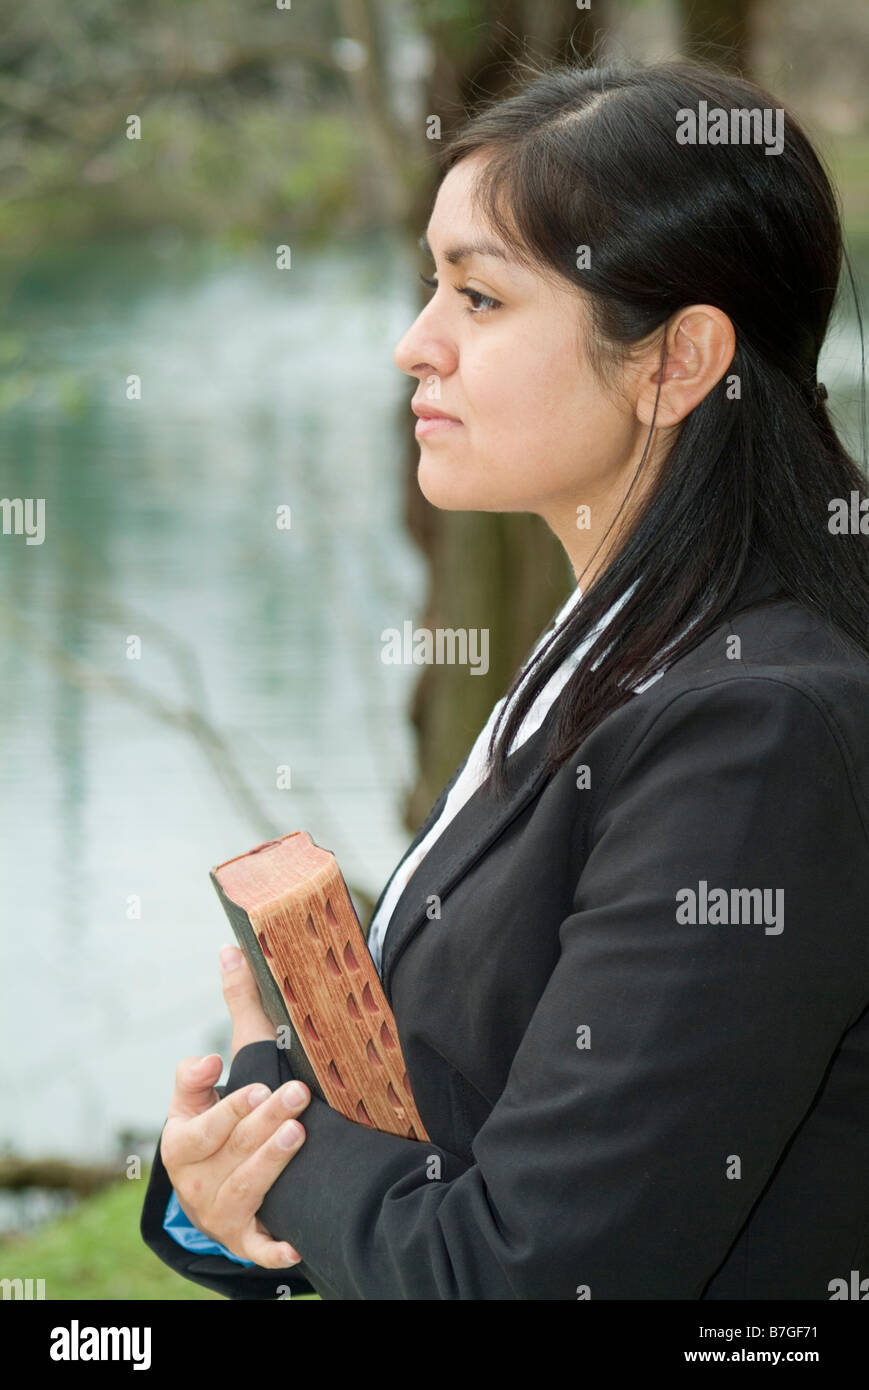 Eine junge Frau blickte in die Ferne, die halten, was scheint, eine Bibel zu sein Stockfoto